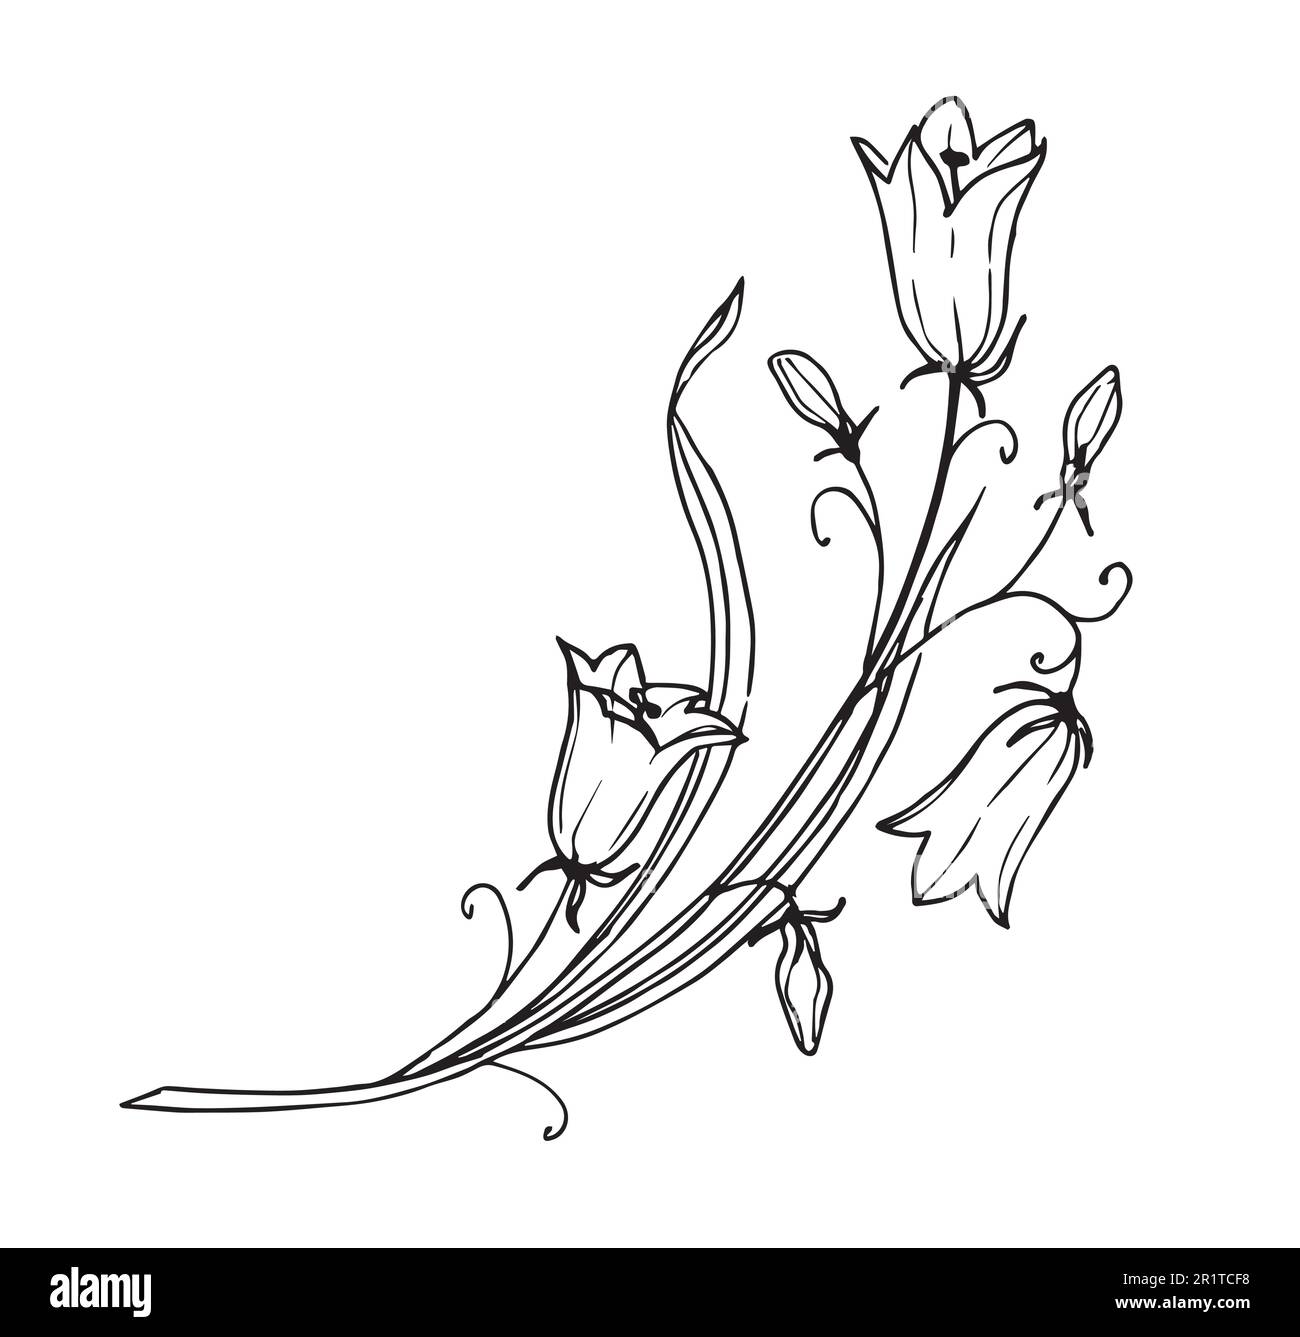 Bellflower su sfondo isolato. Disegno a mano del vettore floreale della campana Fiore in stile di contorno dipinto da inchiostro nero. Disegno grafico botanico di Bluebell per biglietti d'auguri o inviti. Illustrazione Vettoriale